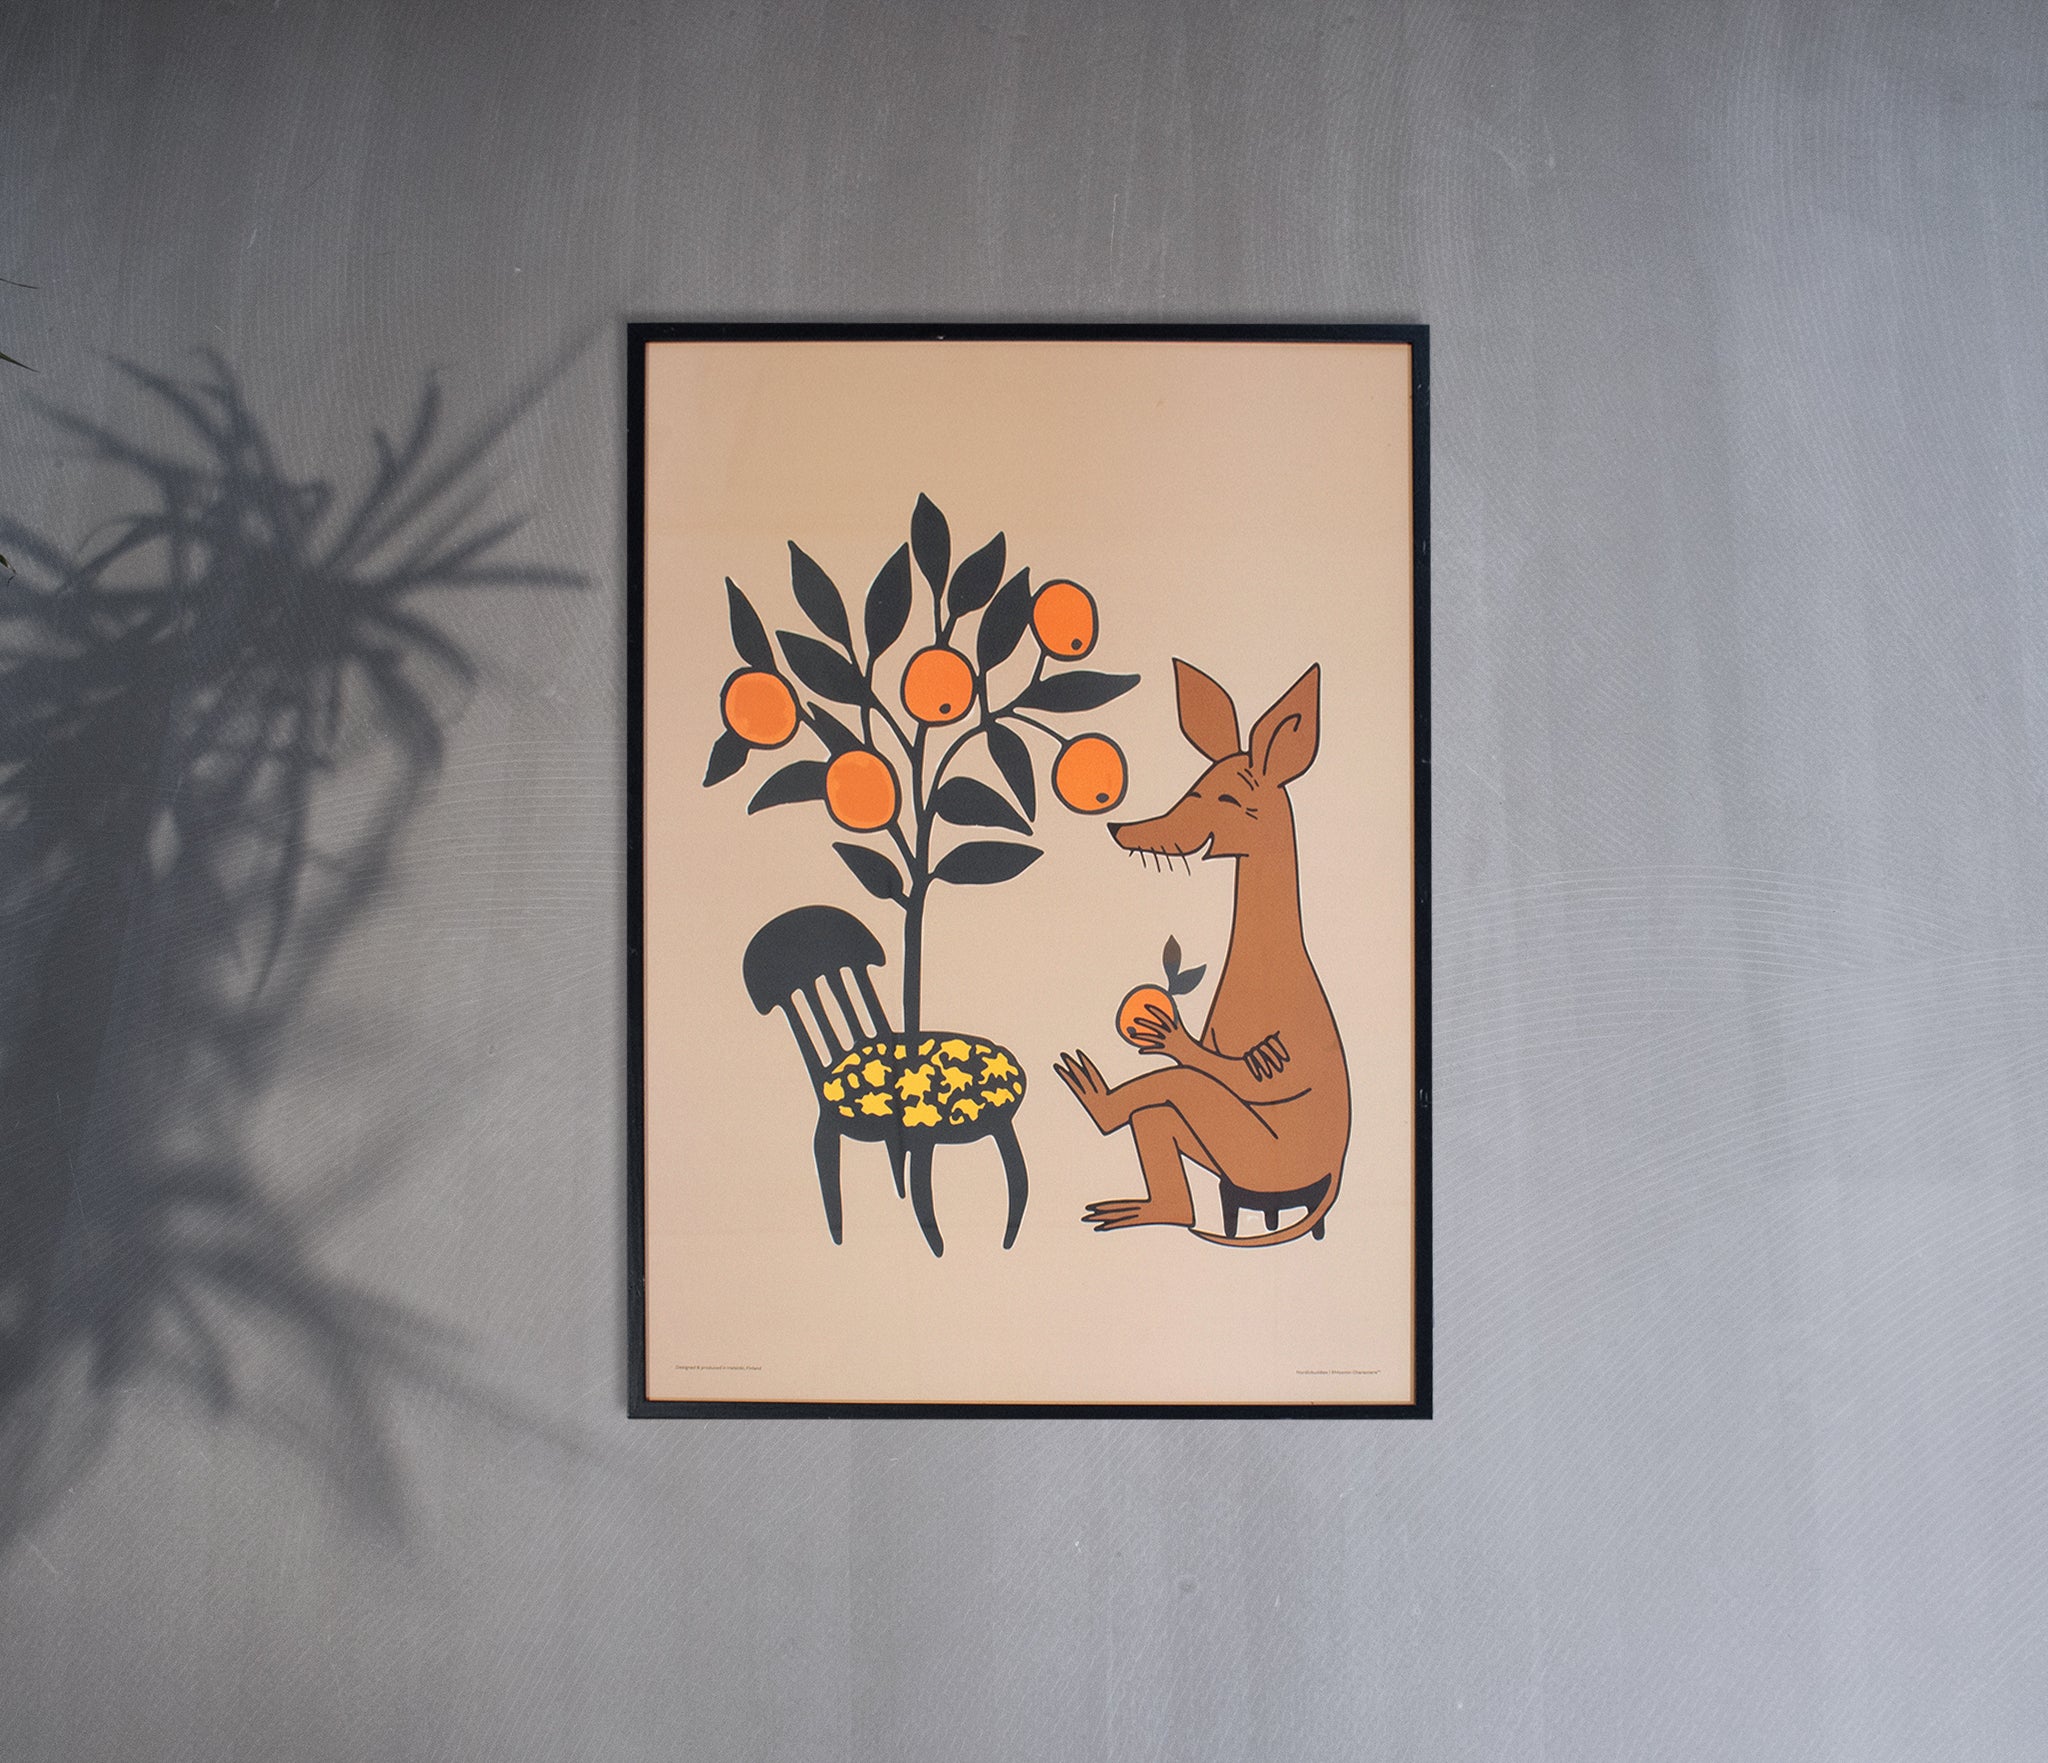 Sniffs Oranges Poster 30x40cm - Beige